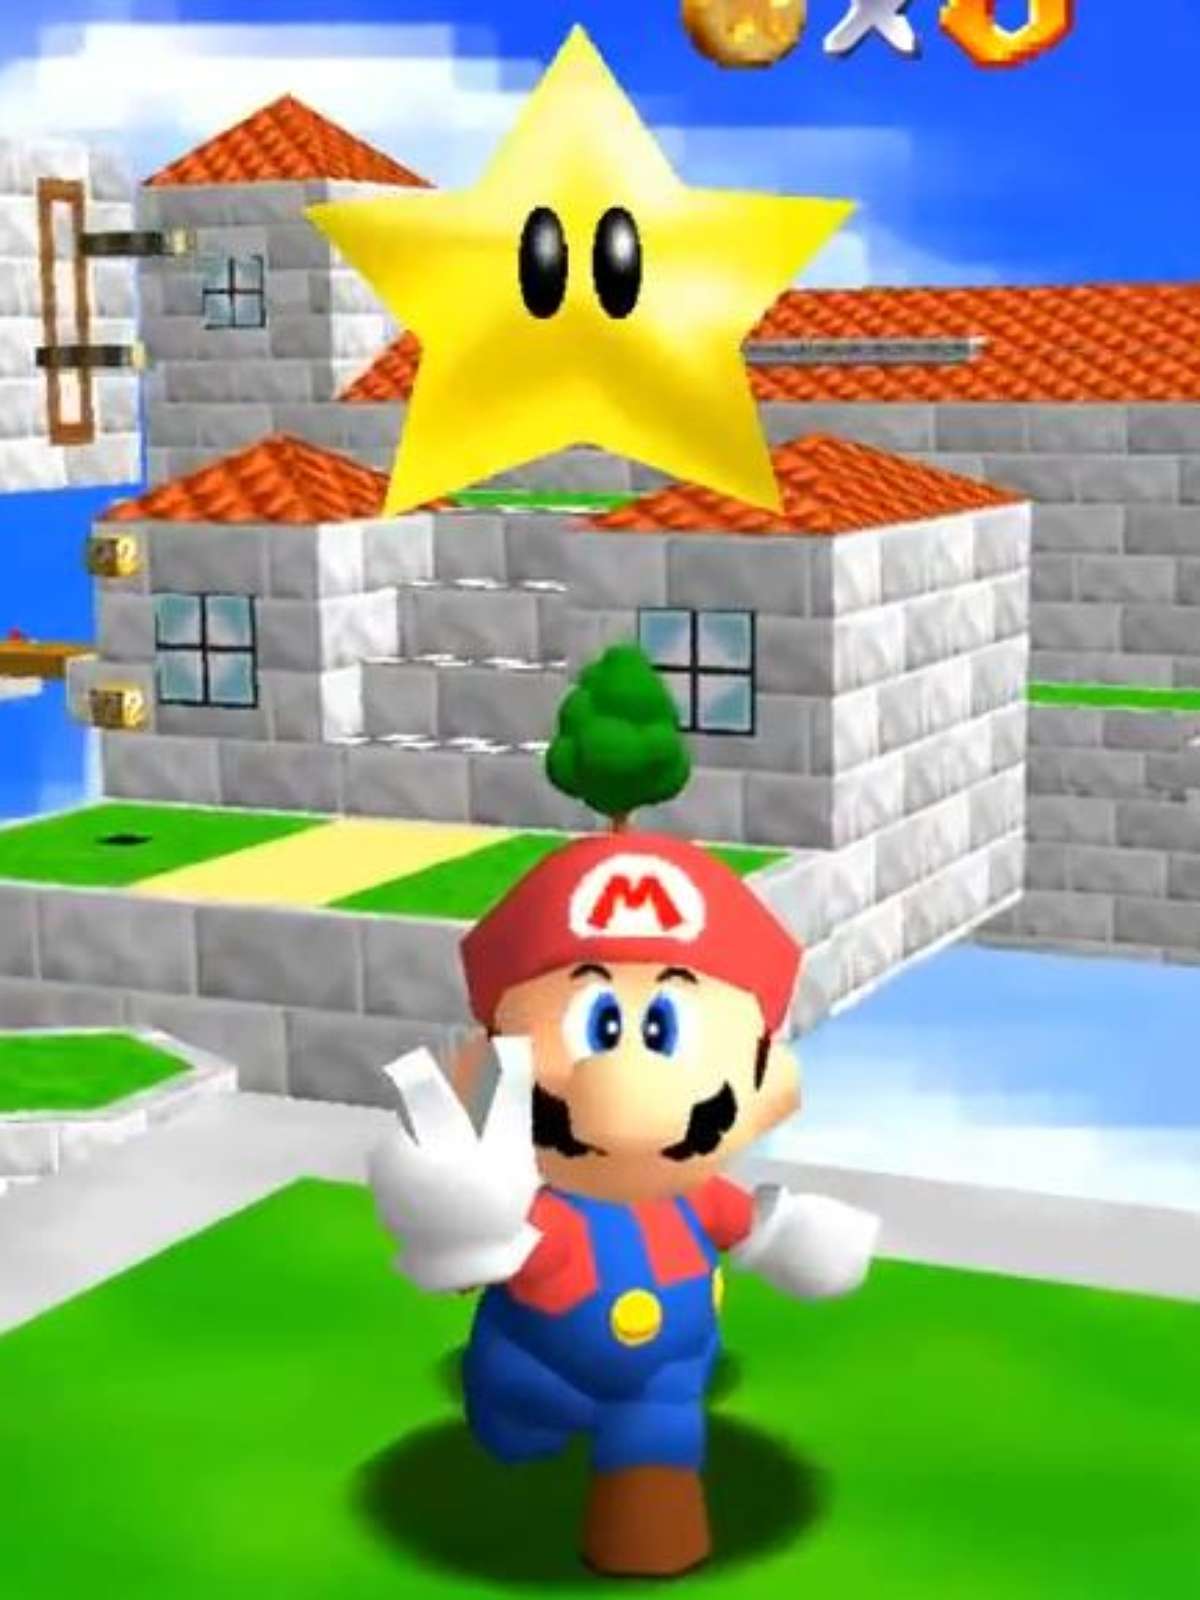 Jogar Super Mario pode aumentar a sua inteligência